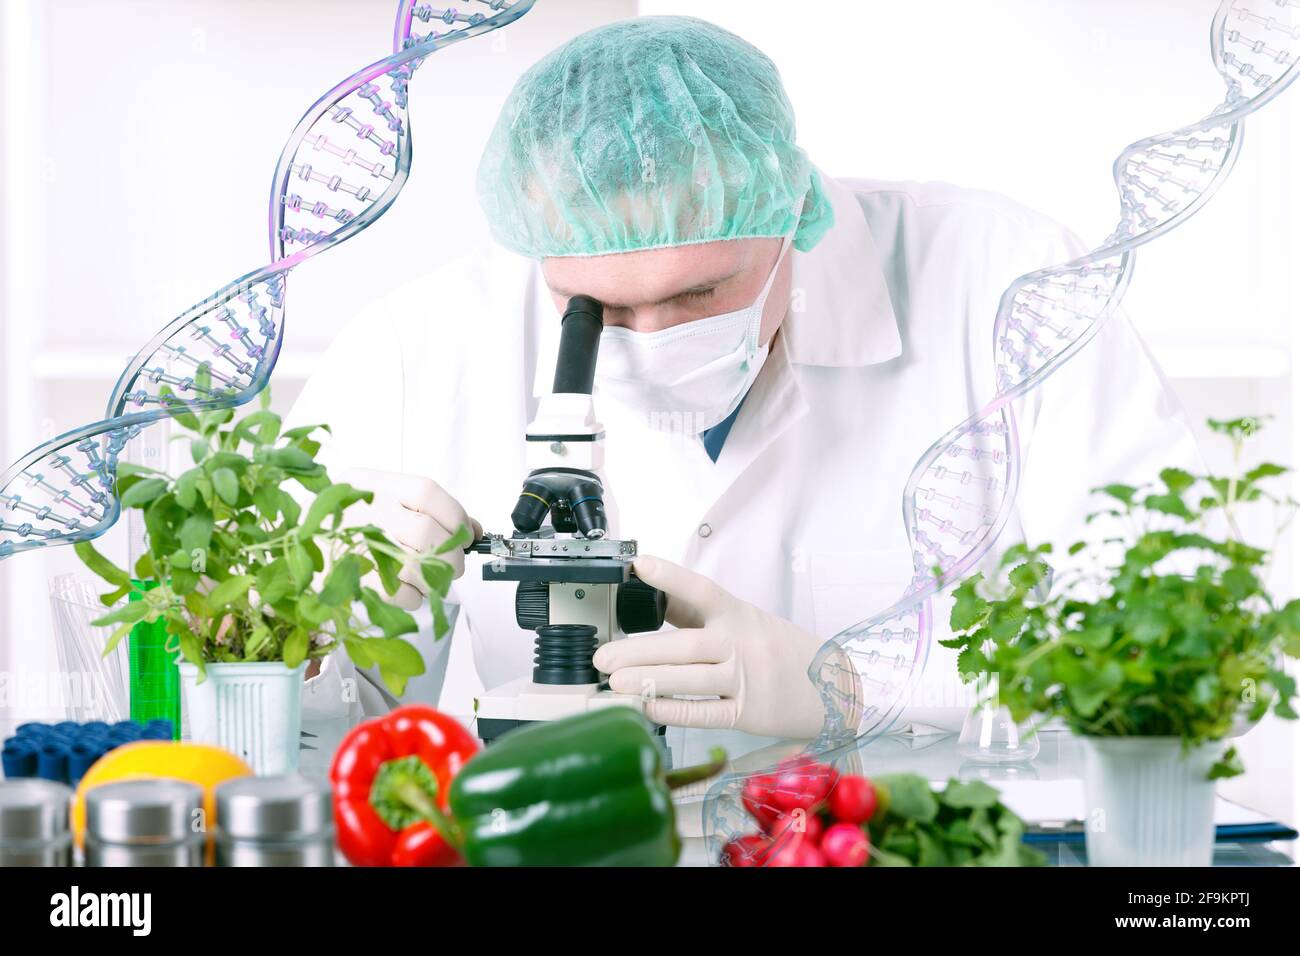 Chercheur avec des plantes OGM. L'organisme génétiquement modifié ou GEO est une plante dont le matériel génétique a été modifié à l'aide de la technique de génie génétique Banque D'Images